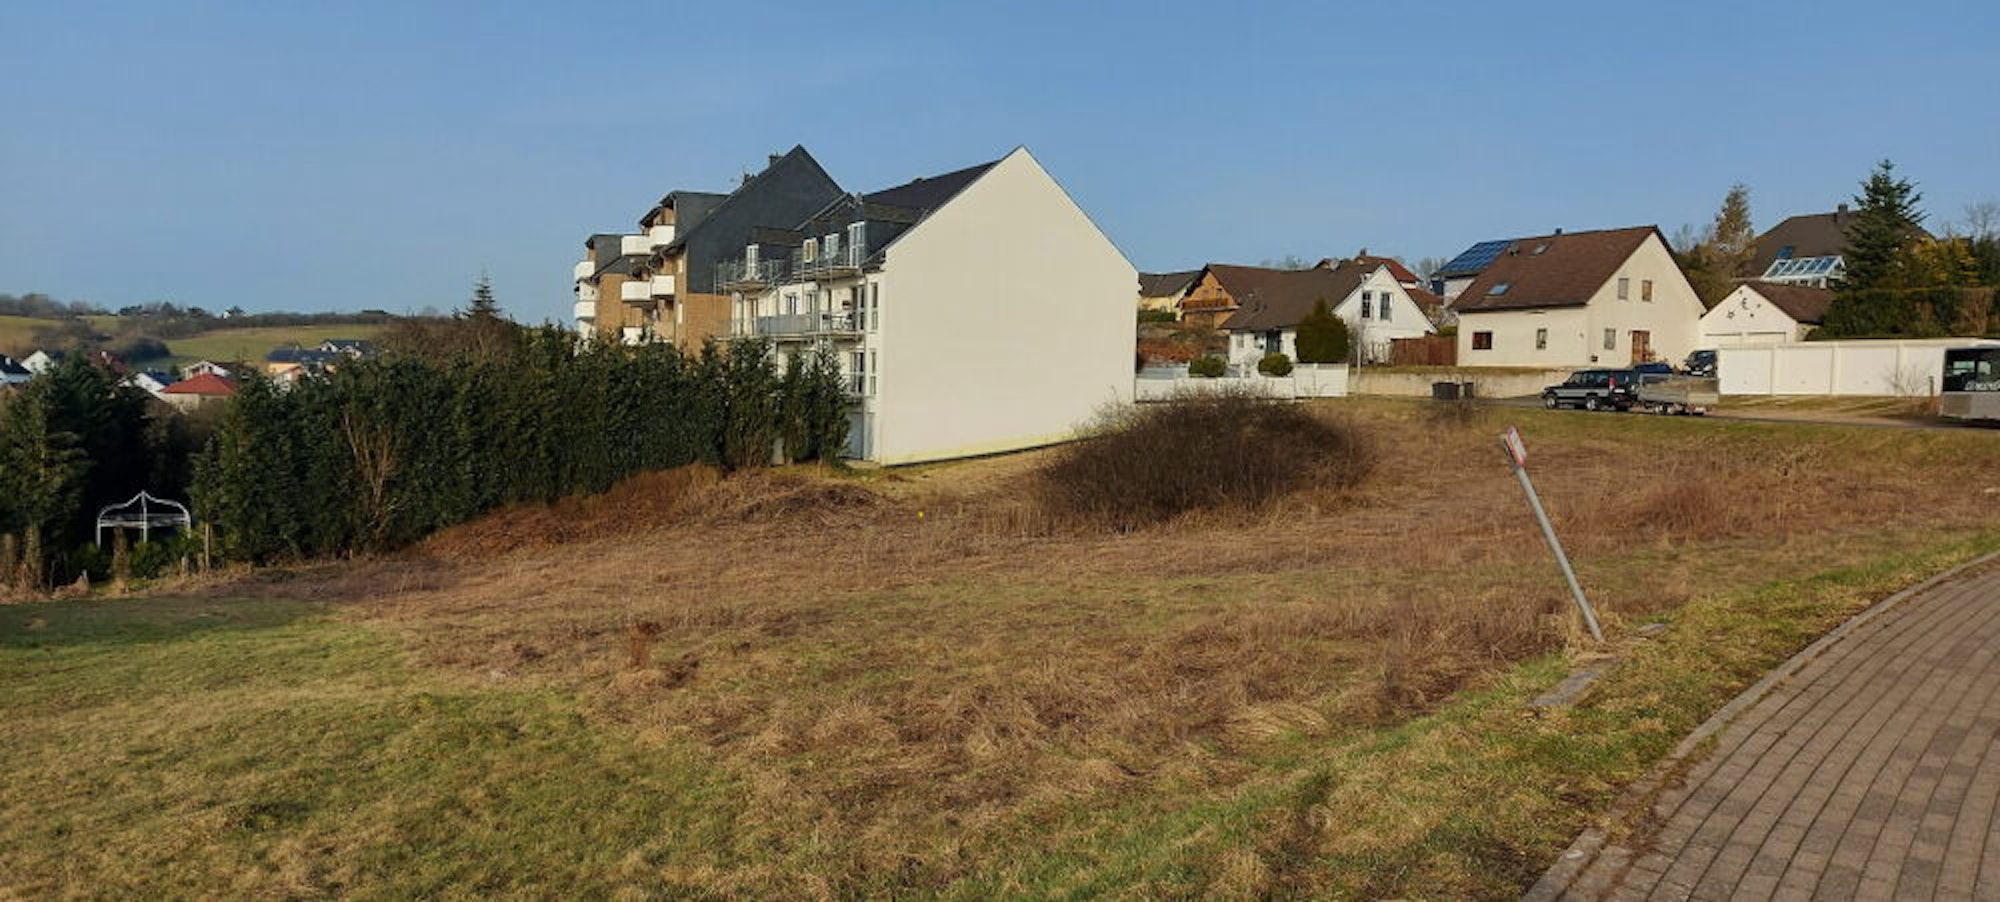 Am Frankenring in Blankenheim soll auf diesem der Gemeinde gehörenden Grundstück der neue, fünfgruppige Kindergarten entstehen.